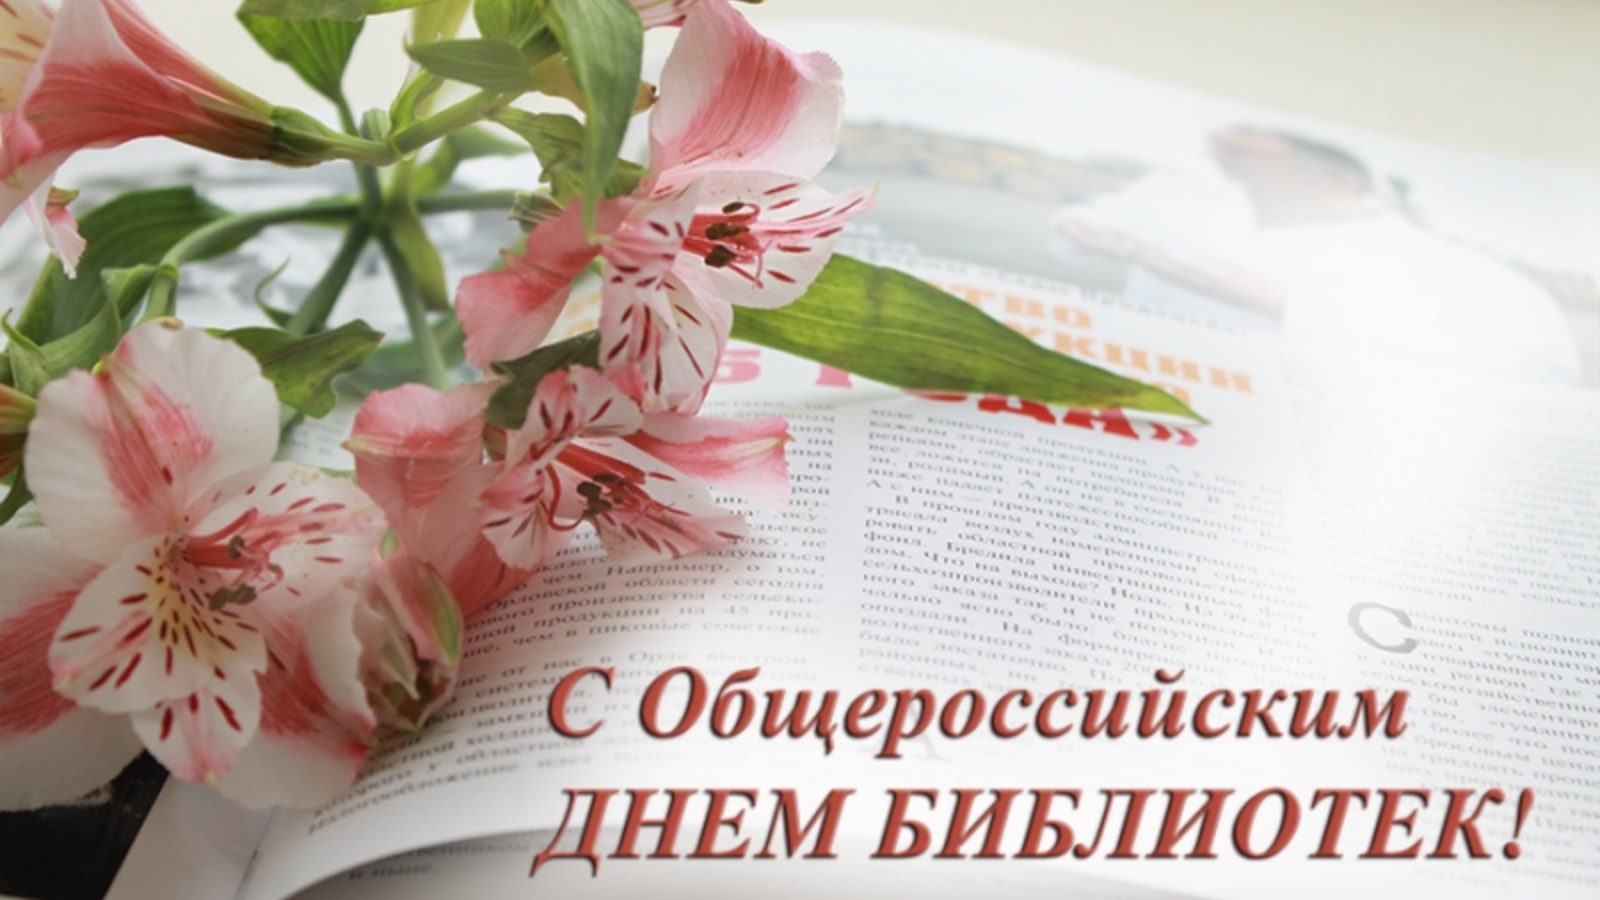 СОДБ поздравляет с Общероссийским днем библиотек!